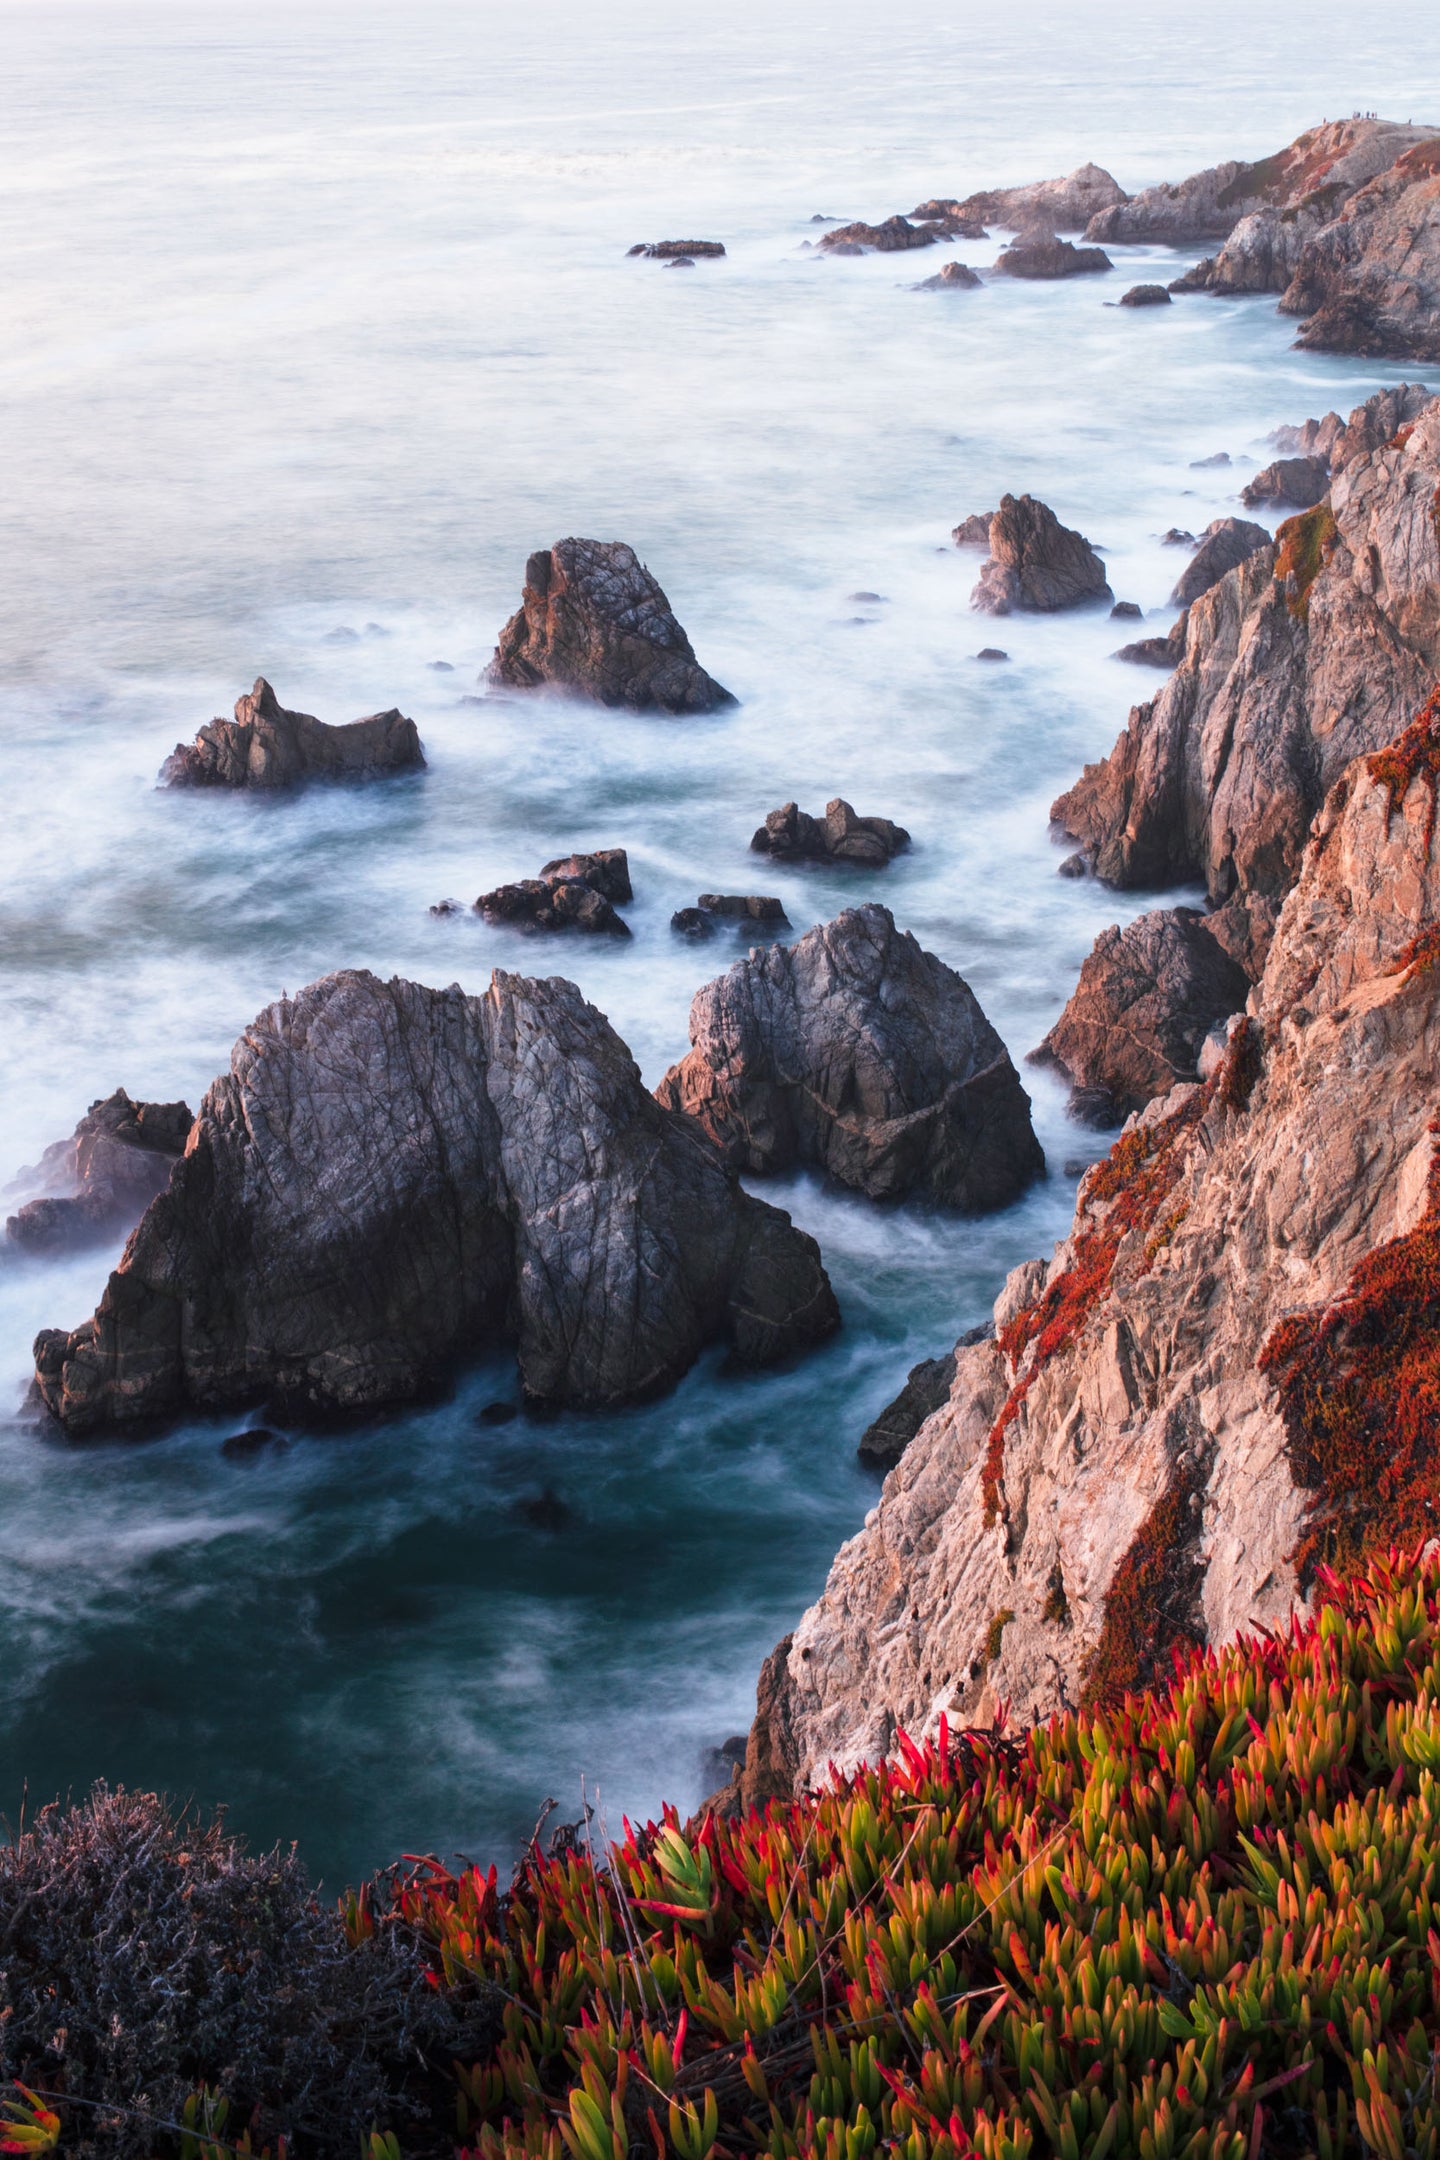 Autumn on the Coastline | Bodega Head, Bodega Bay, California